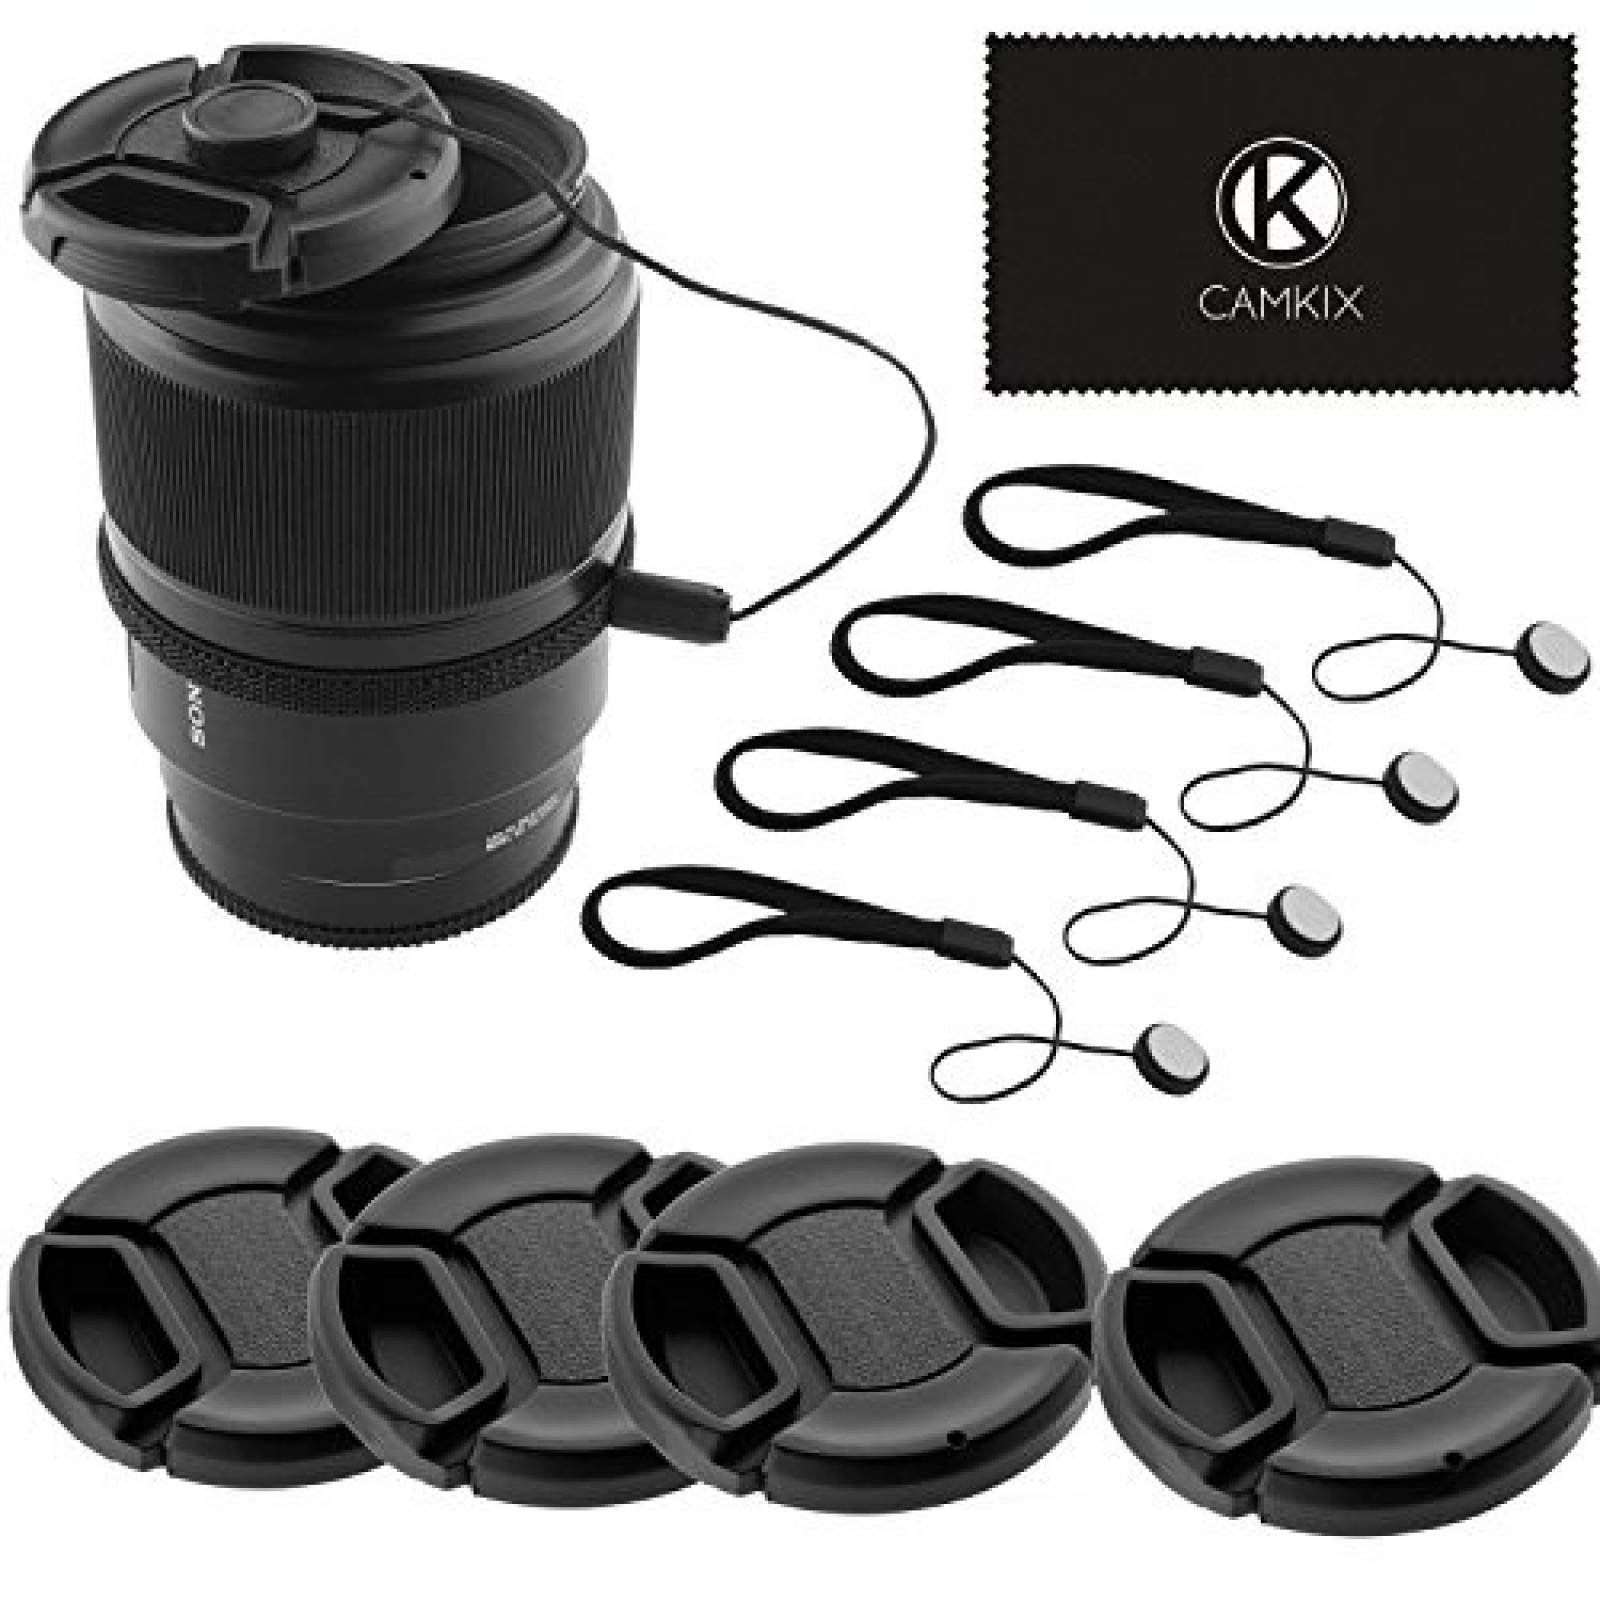 Set de tapas de lentes CamKix 52mm para cámaras DSLR 4pzs